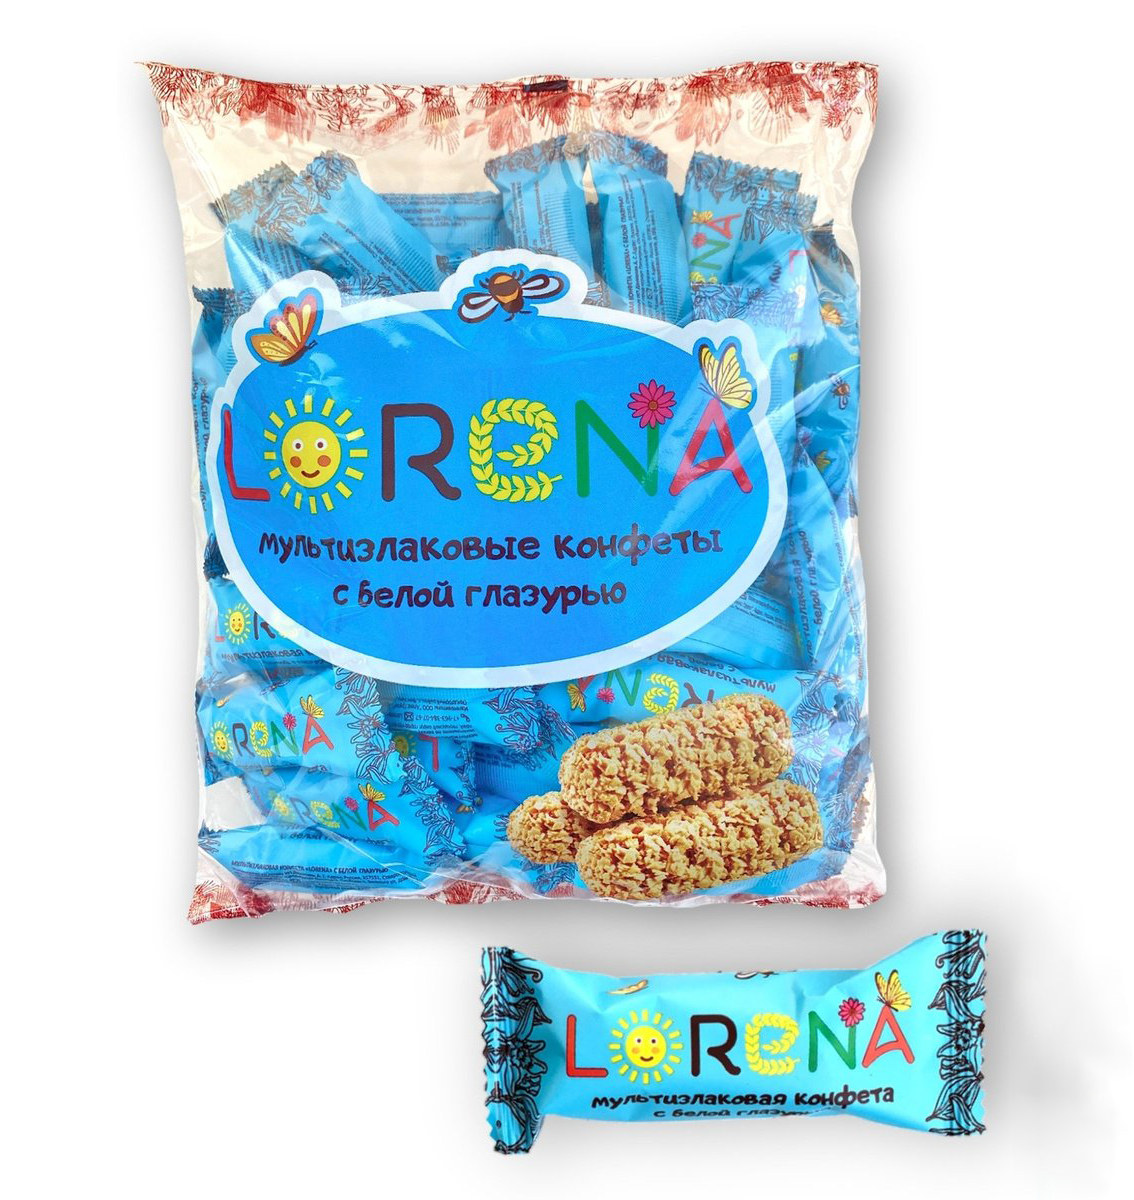 Мультизлаковые конфеты LORENA c белой глазурью 500г, ООО Алекс групп